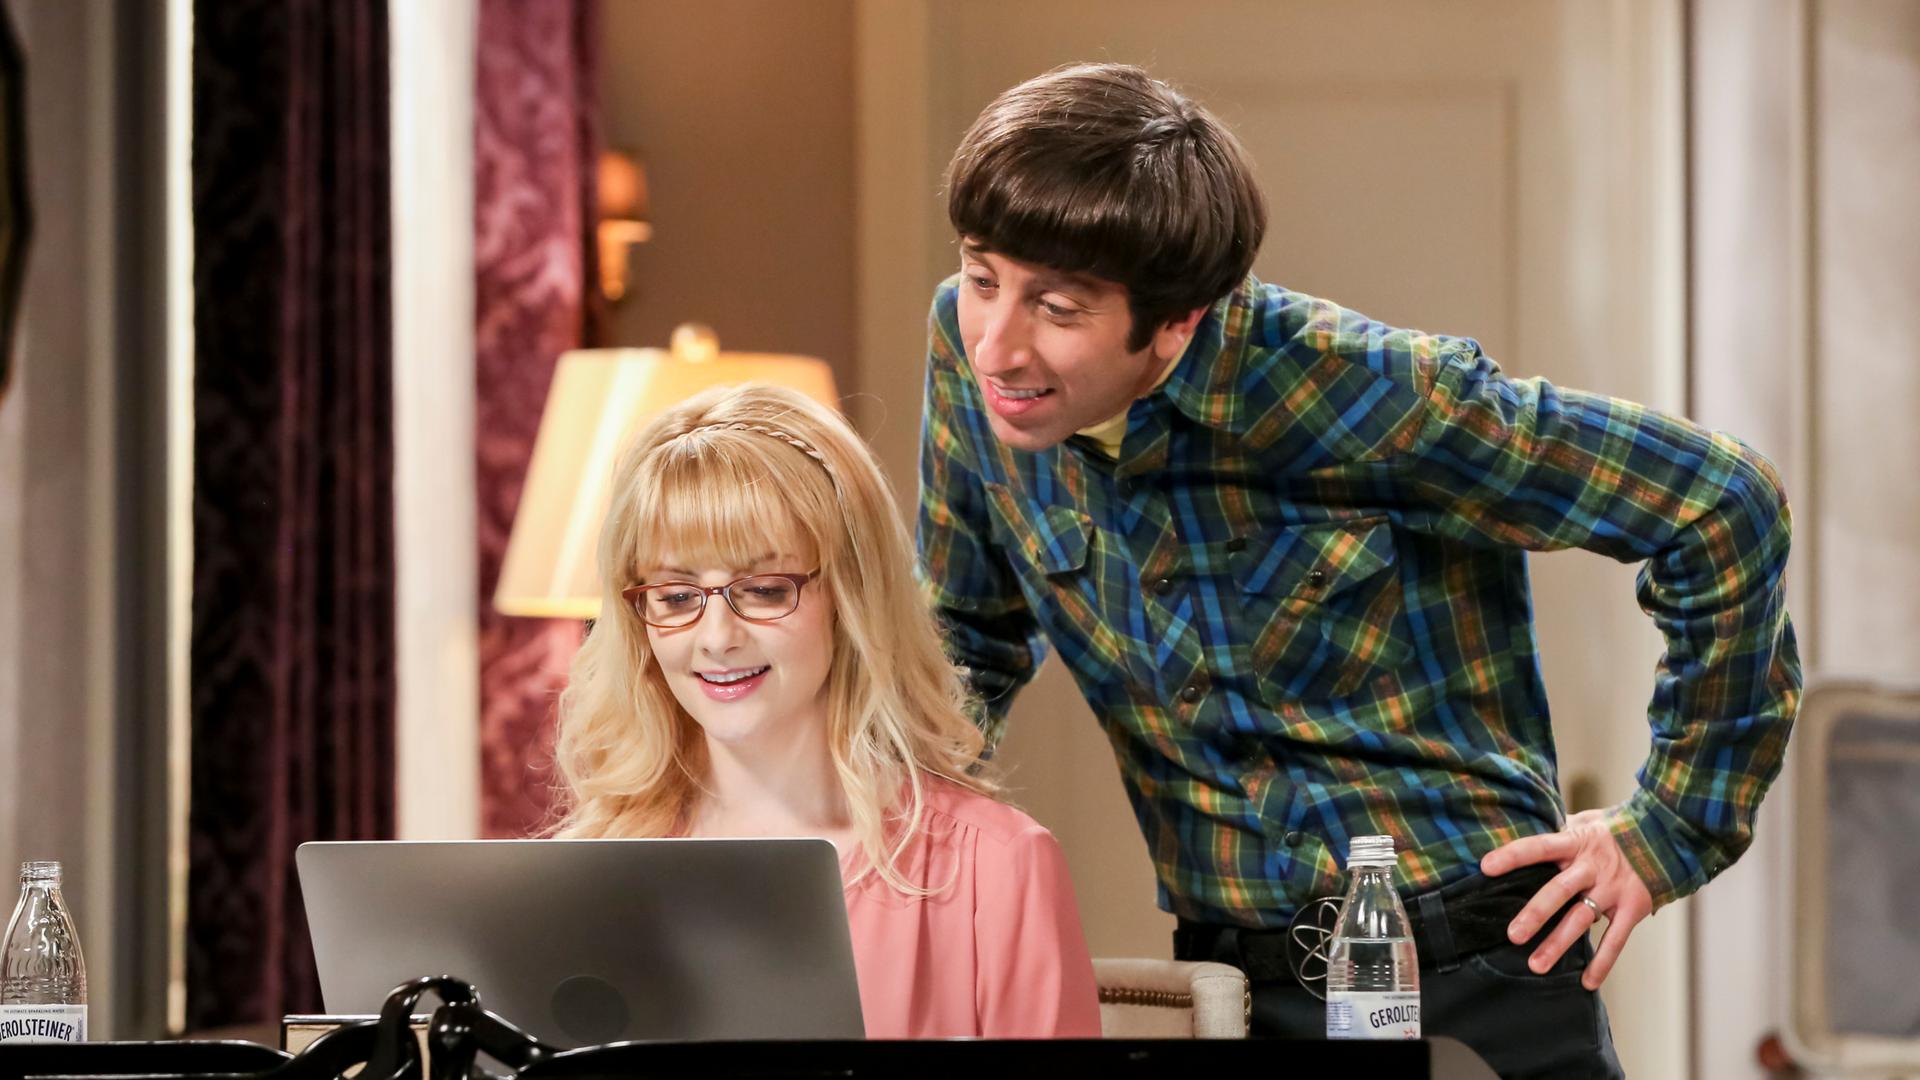 Ein Szenenfoto aus der US-TV-Serie "The Big Bang Theory". Es zeigt die Schauspielerin Melissa Rauch und den Schauspieler Simon Helberg. Sie sitzt am Laptop, er steht schräg hinter ihr.